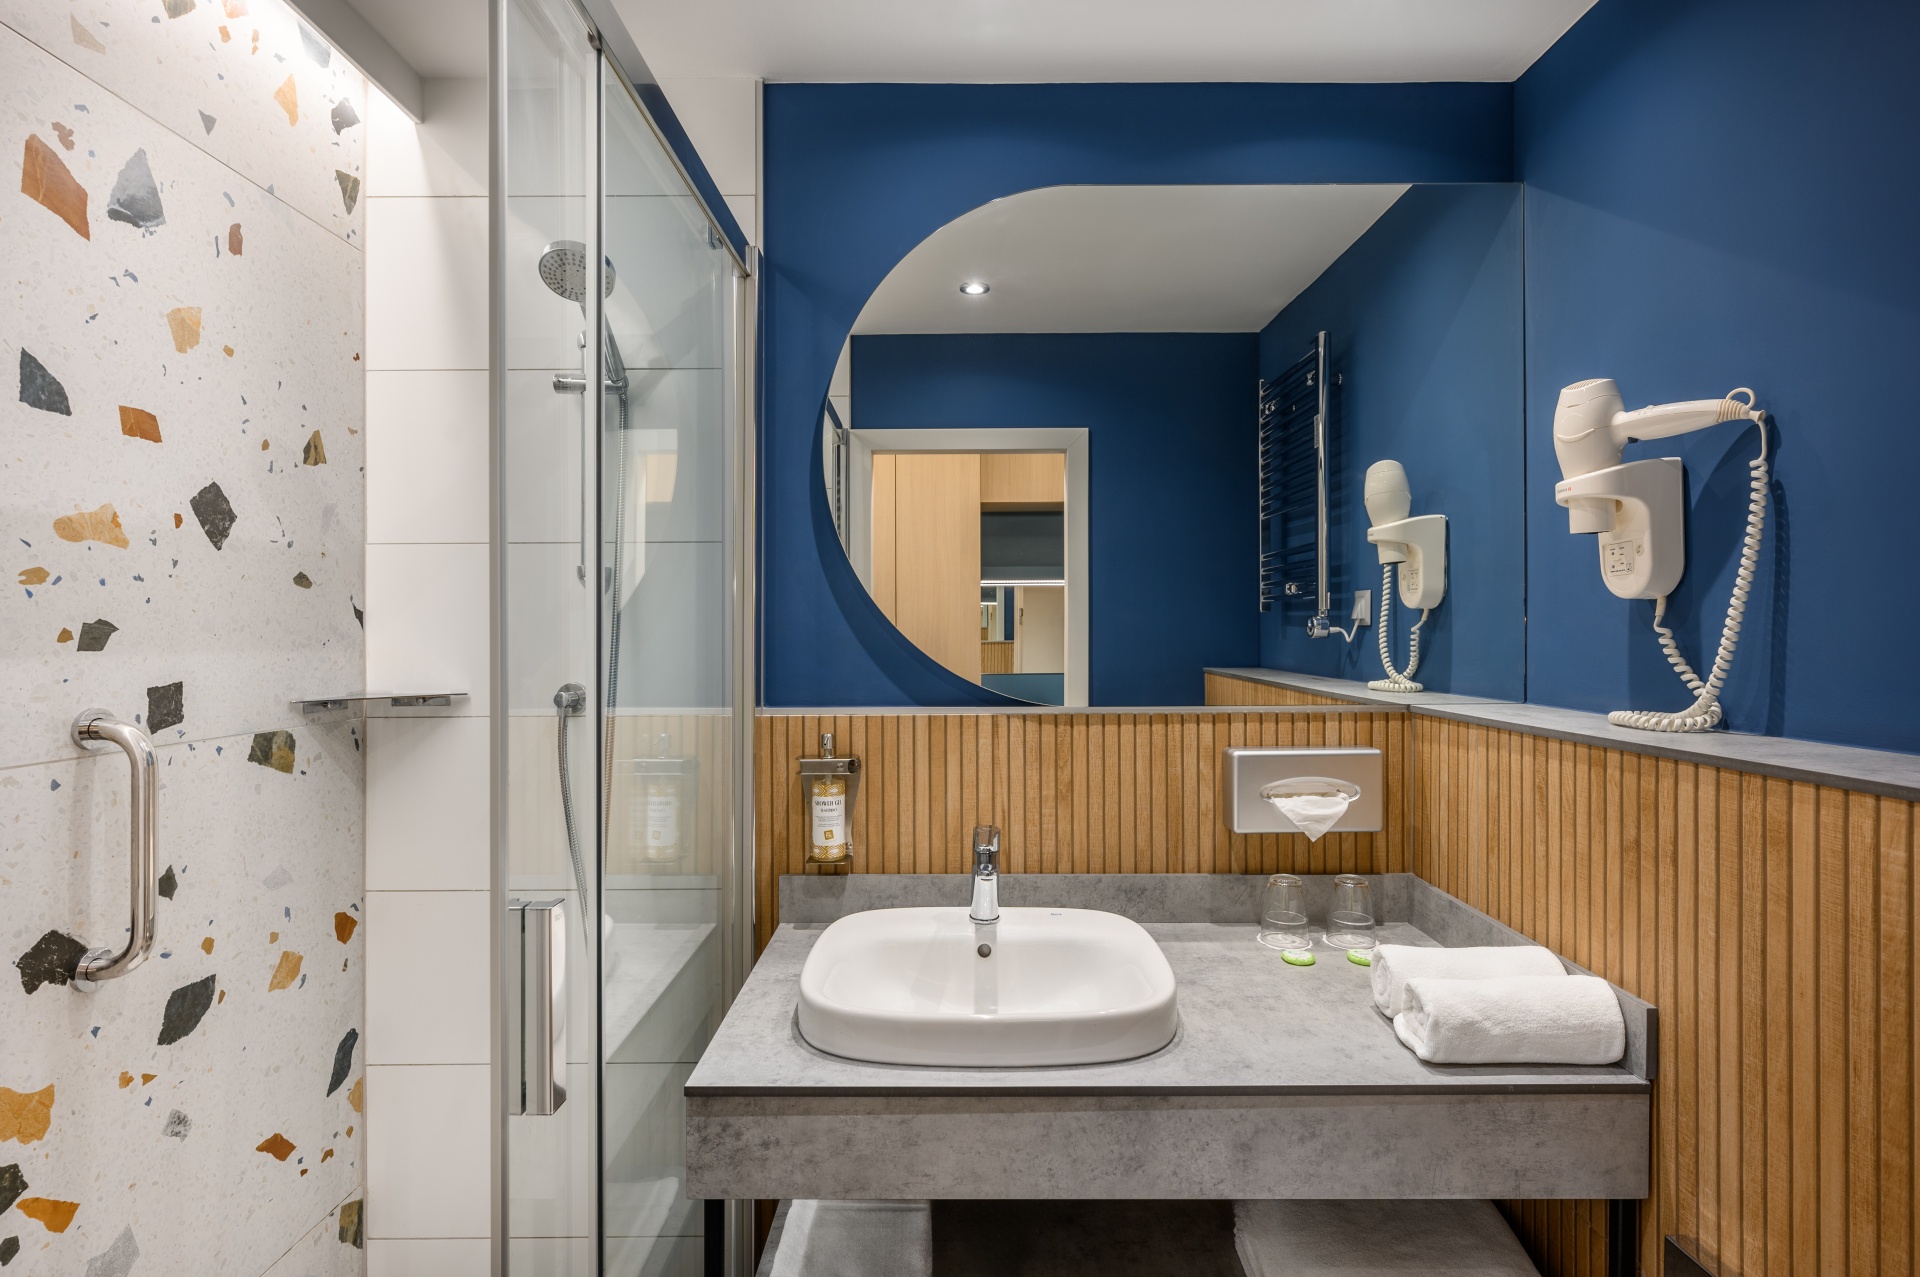 Fürdőszoba a balatonfüredi Danubius Hotel Annabella Prémium szobájában